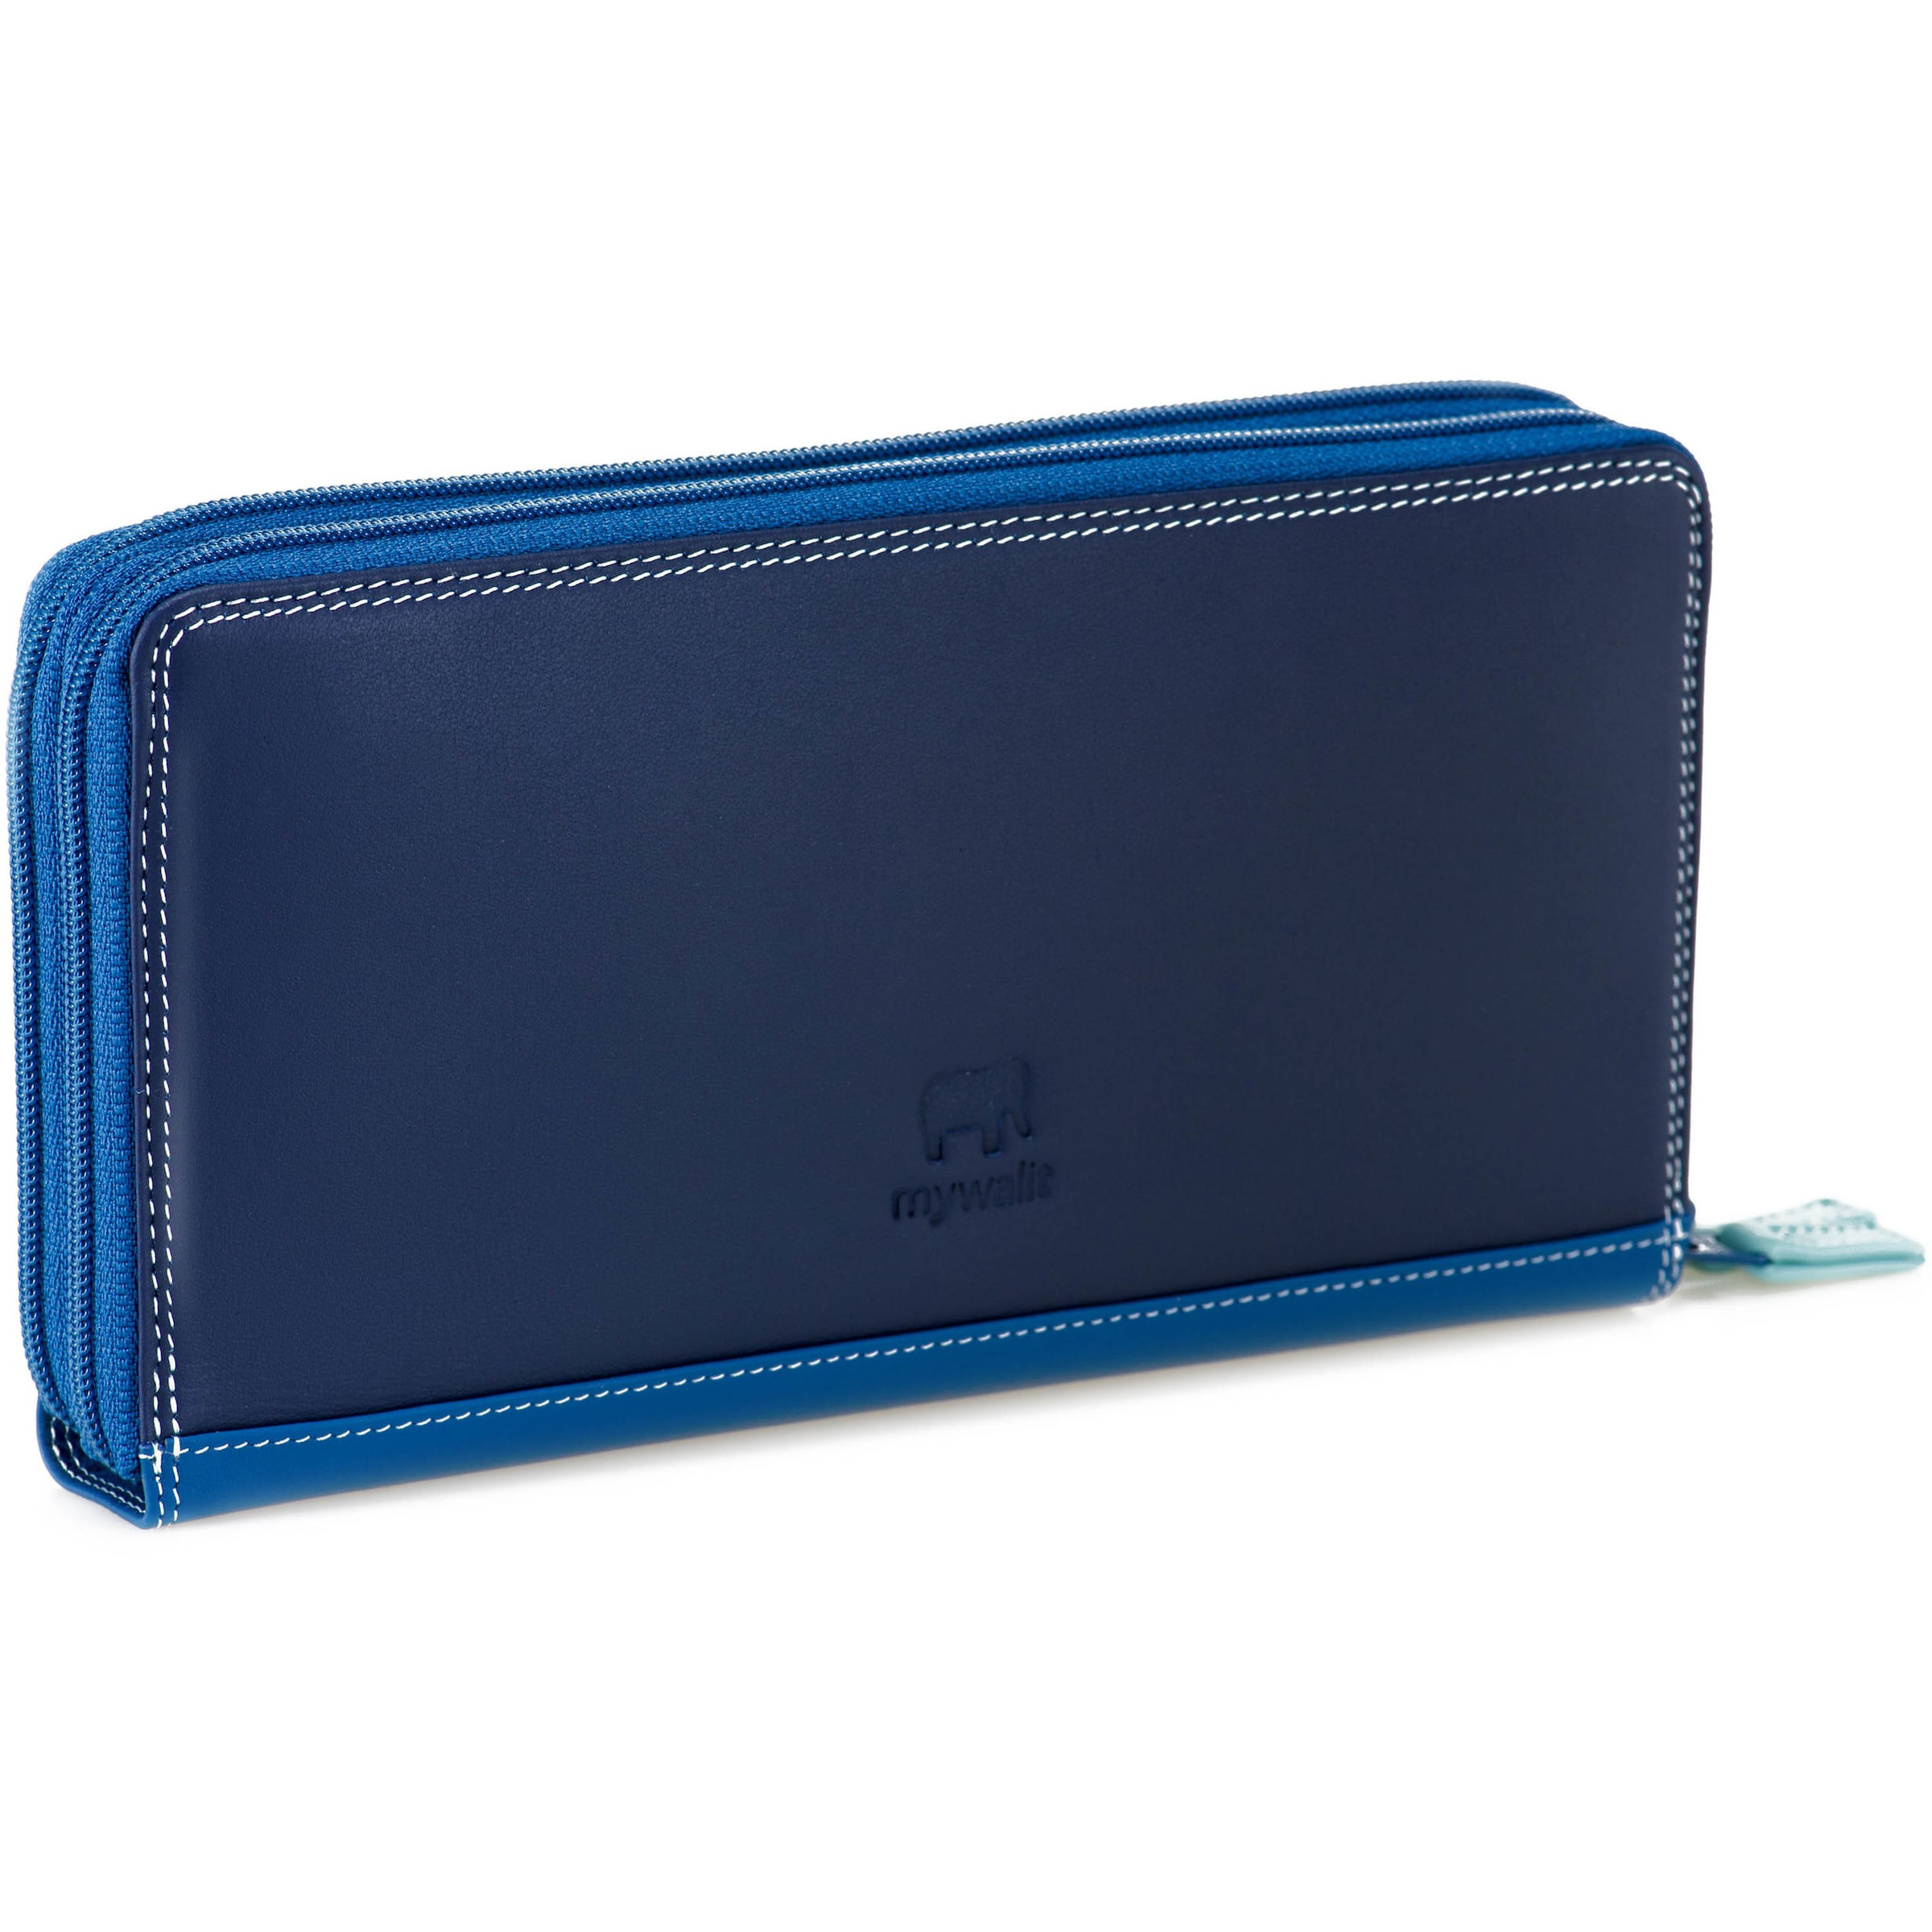 Frauen Portemonnaies mywalit Geldbörse 'Medium Tri-fold' in Blau, Nachtblau, Himmelblau - LE98698